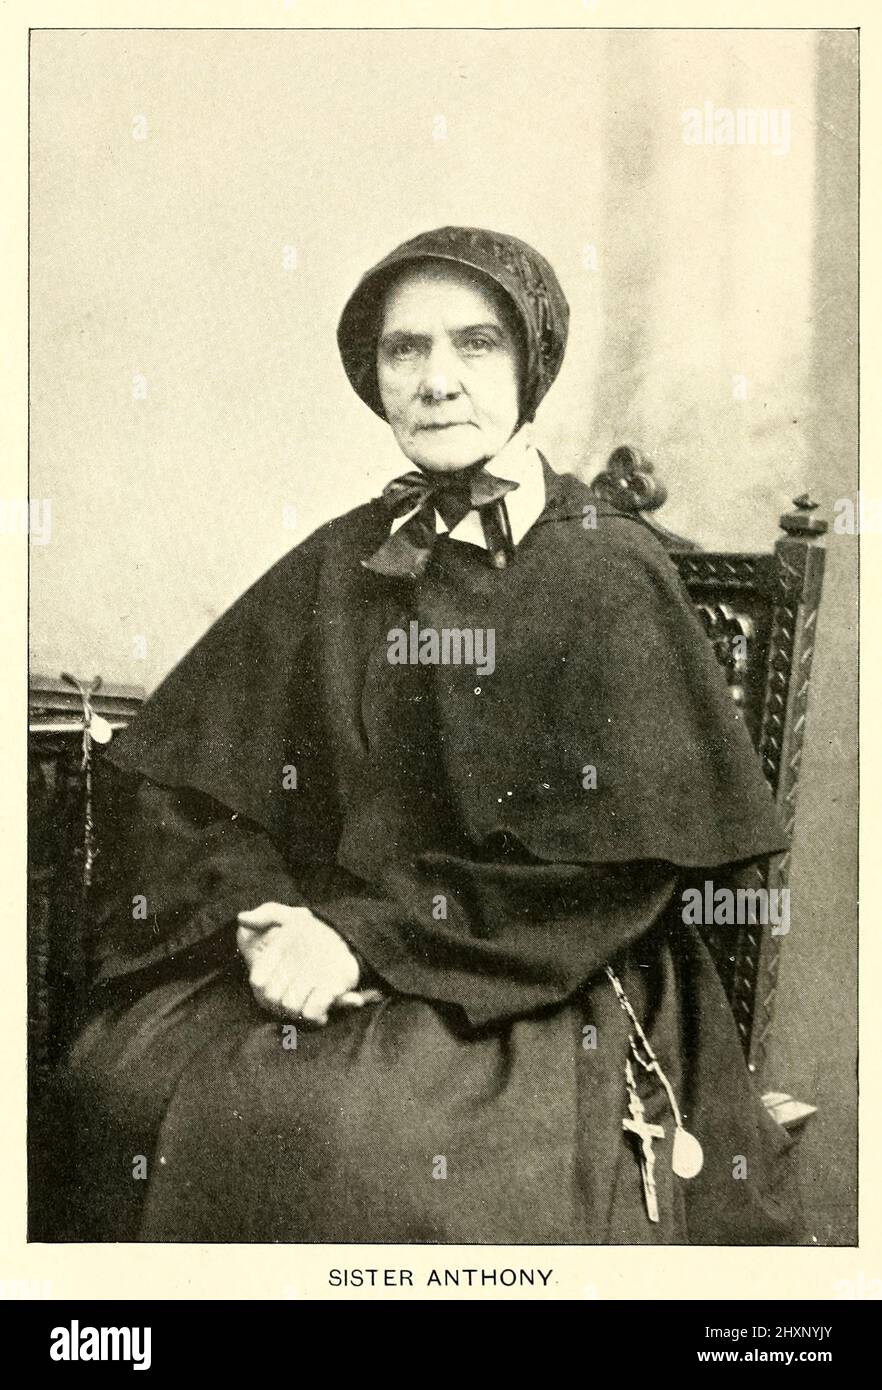 Mary O'Connell (besser bekannt als Schwester Anthony, S.C.) (1814 – 8. Dezember 1897) war ein irischer Einwanderer in die Vereinigten Staaten, der eine römisch-katholische Ordensschwester wurde. Als Schwester der Wohltätigkeitsorganisation von Cincinnati diente sie mit Auszeichnung als Krankenschwester an der Front des amerikanischen Bürgerkrieges. Ihre Arbeit mit Verwundeten und im Gesundheitswesen im Allgemeinen veranlasste sie, als „der Engel des Schlachtfeldes“ und „die Florence Nightingale of America“ bekannt zu werden. Ihr Porträt hängt in der Smithsonian Institution in Washington, DC. Aus dem Buch "Engel des Schlachtfeldes: Eine Geschichte der Arbeit der katholischen Stockfoto